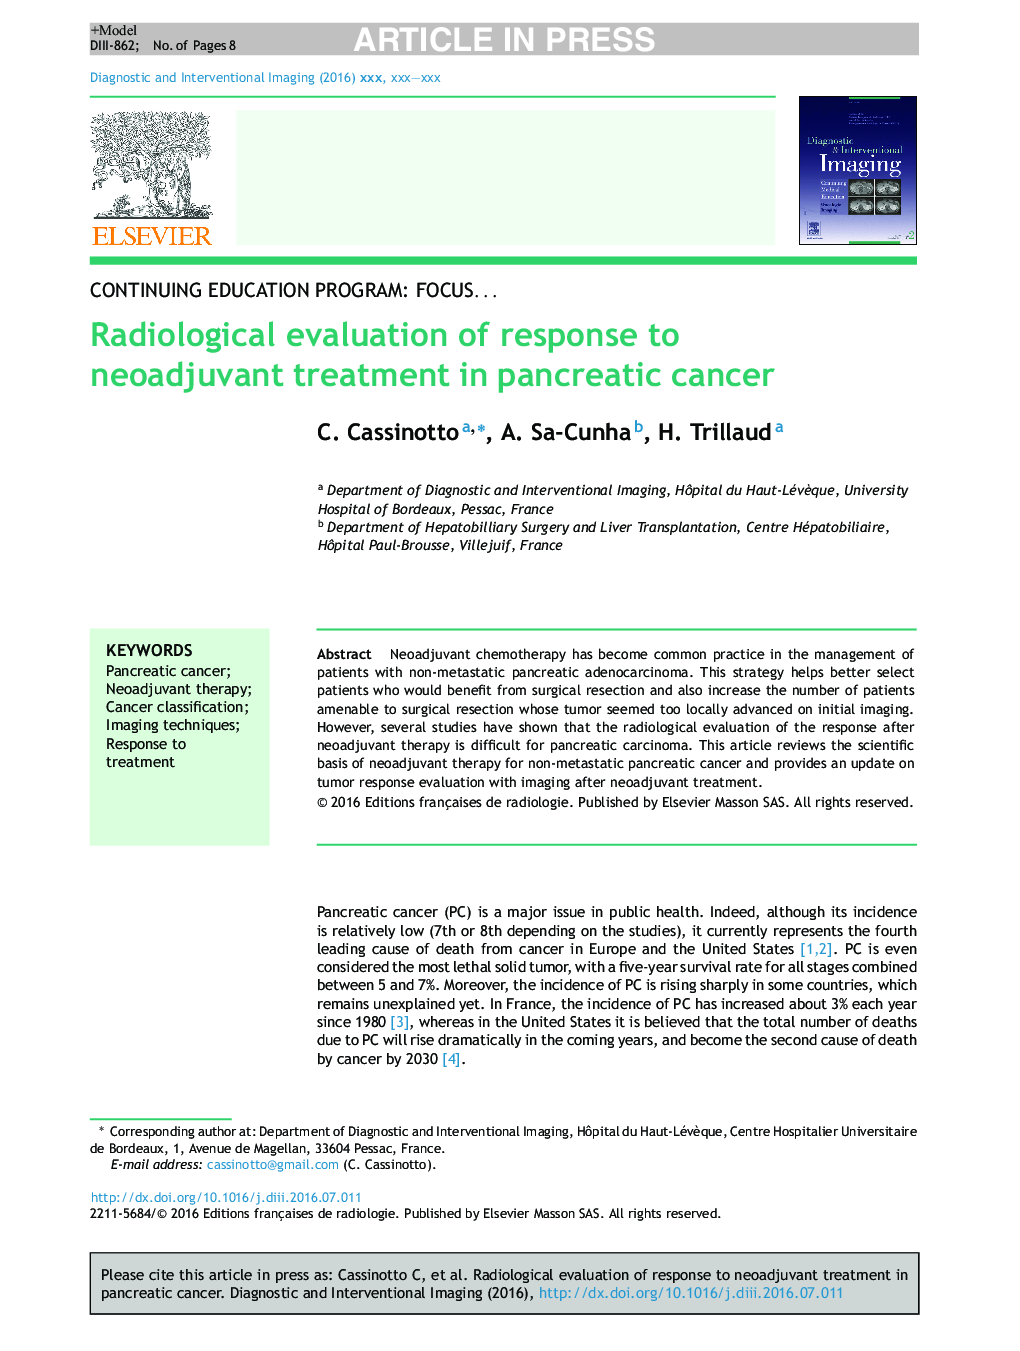 ارزیابی رادیولوژیک پاسخ به درمان نئوآلژوانانت در سرطان پانکراس 